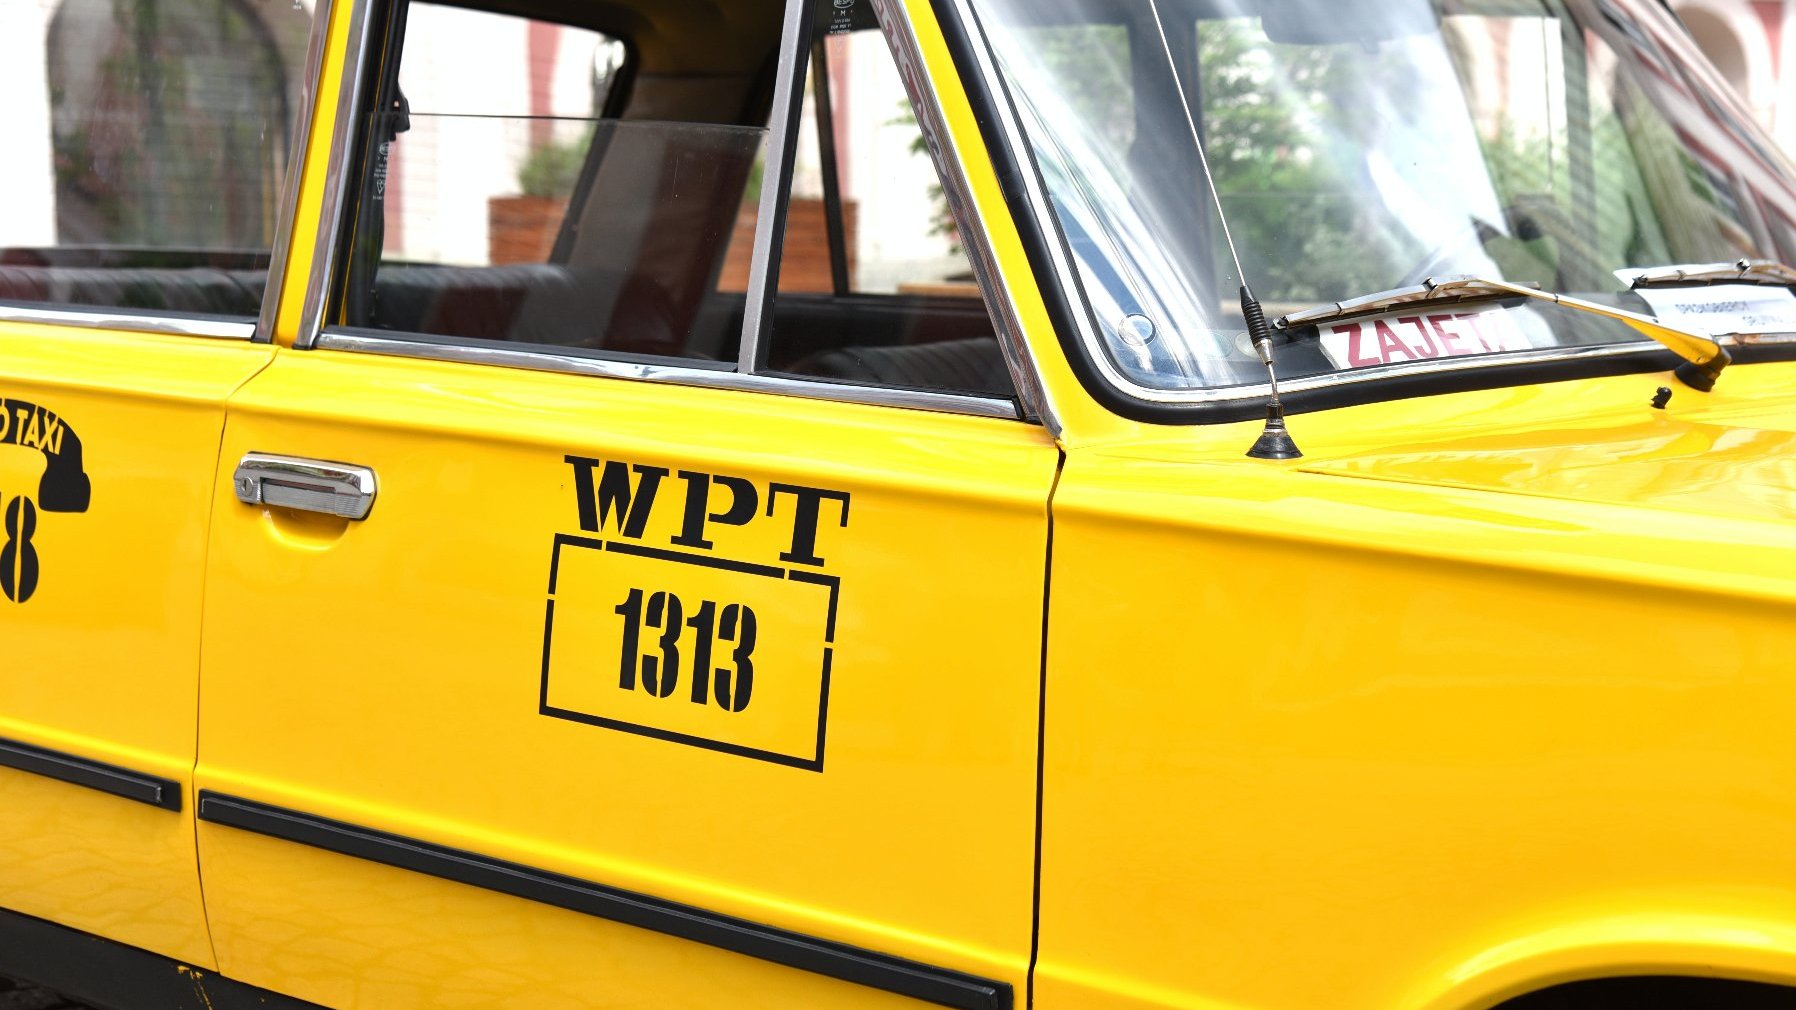 Zdjęcie przedstawia numer boczny żółtej taksówki.